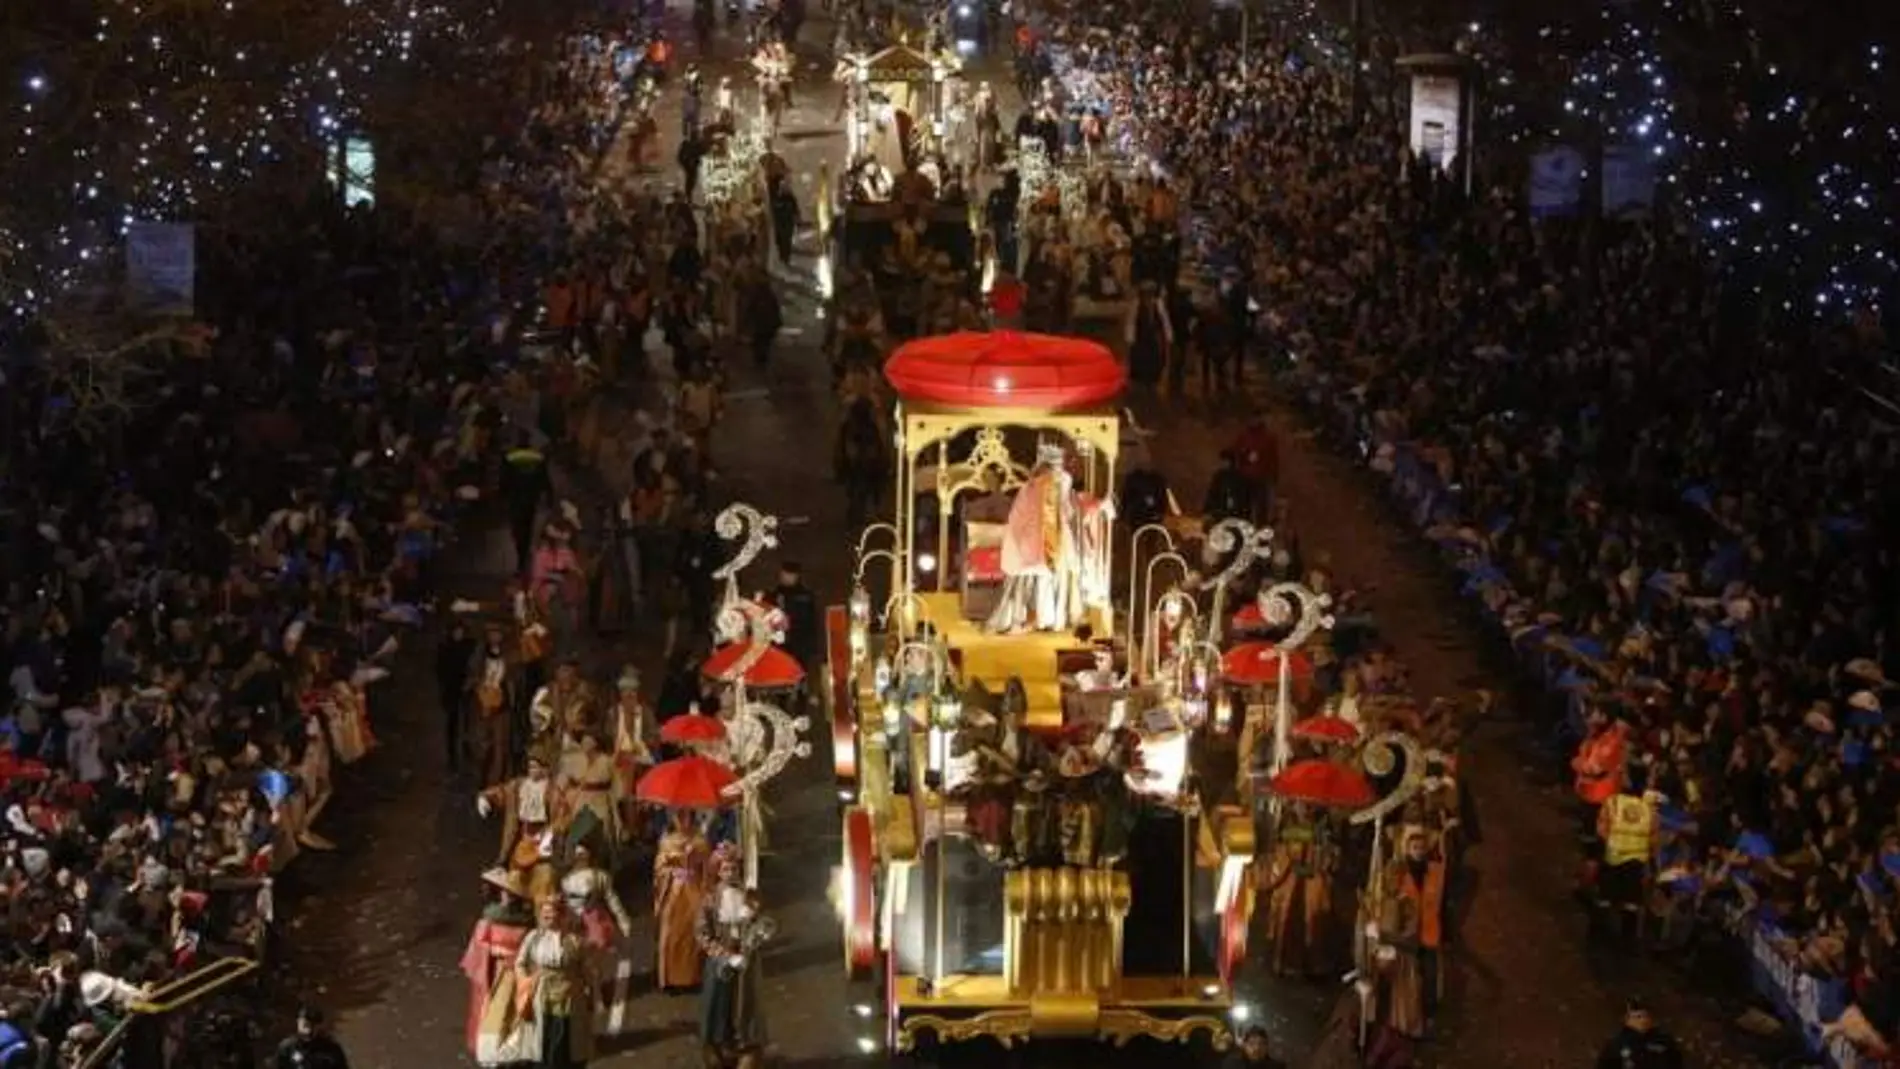 Si los datos epidemiológicos no dictan lo contrario, Madrid volverá a tener una Cabalgata de Reyes tras un año de parón